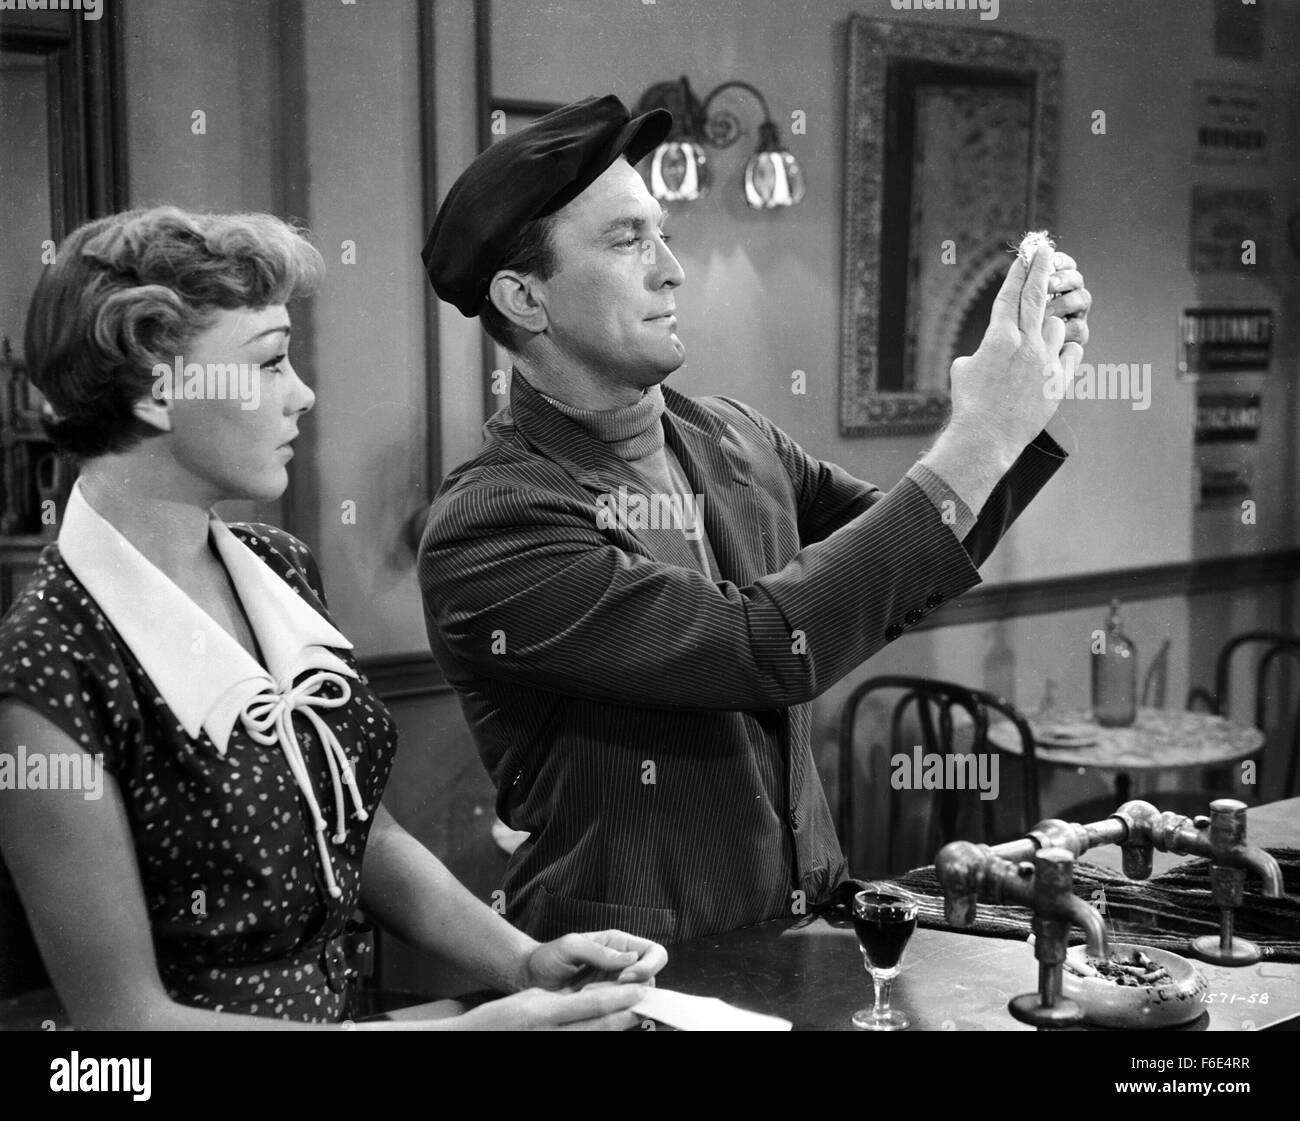 DATE DE SORTIE : Mars 26, 1953. Titre du film : l'histoire de trois amours.  STUDIO : Metro-Goldwyn-Mayer (MGM). Résumé : L'histoire de trois amours est  réglé sur un bateau de croisière,